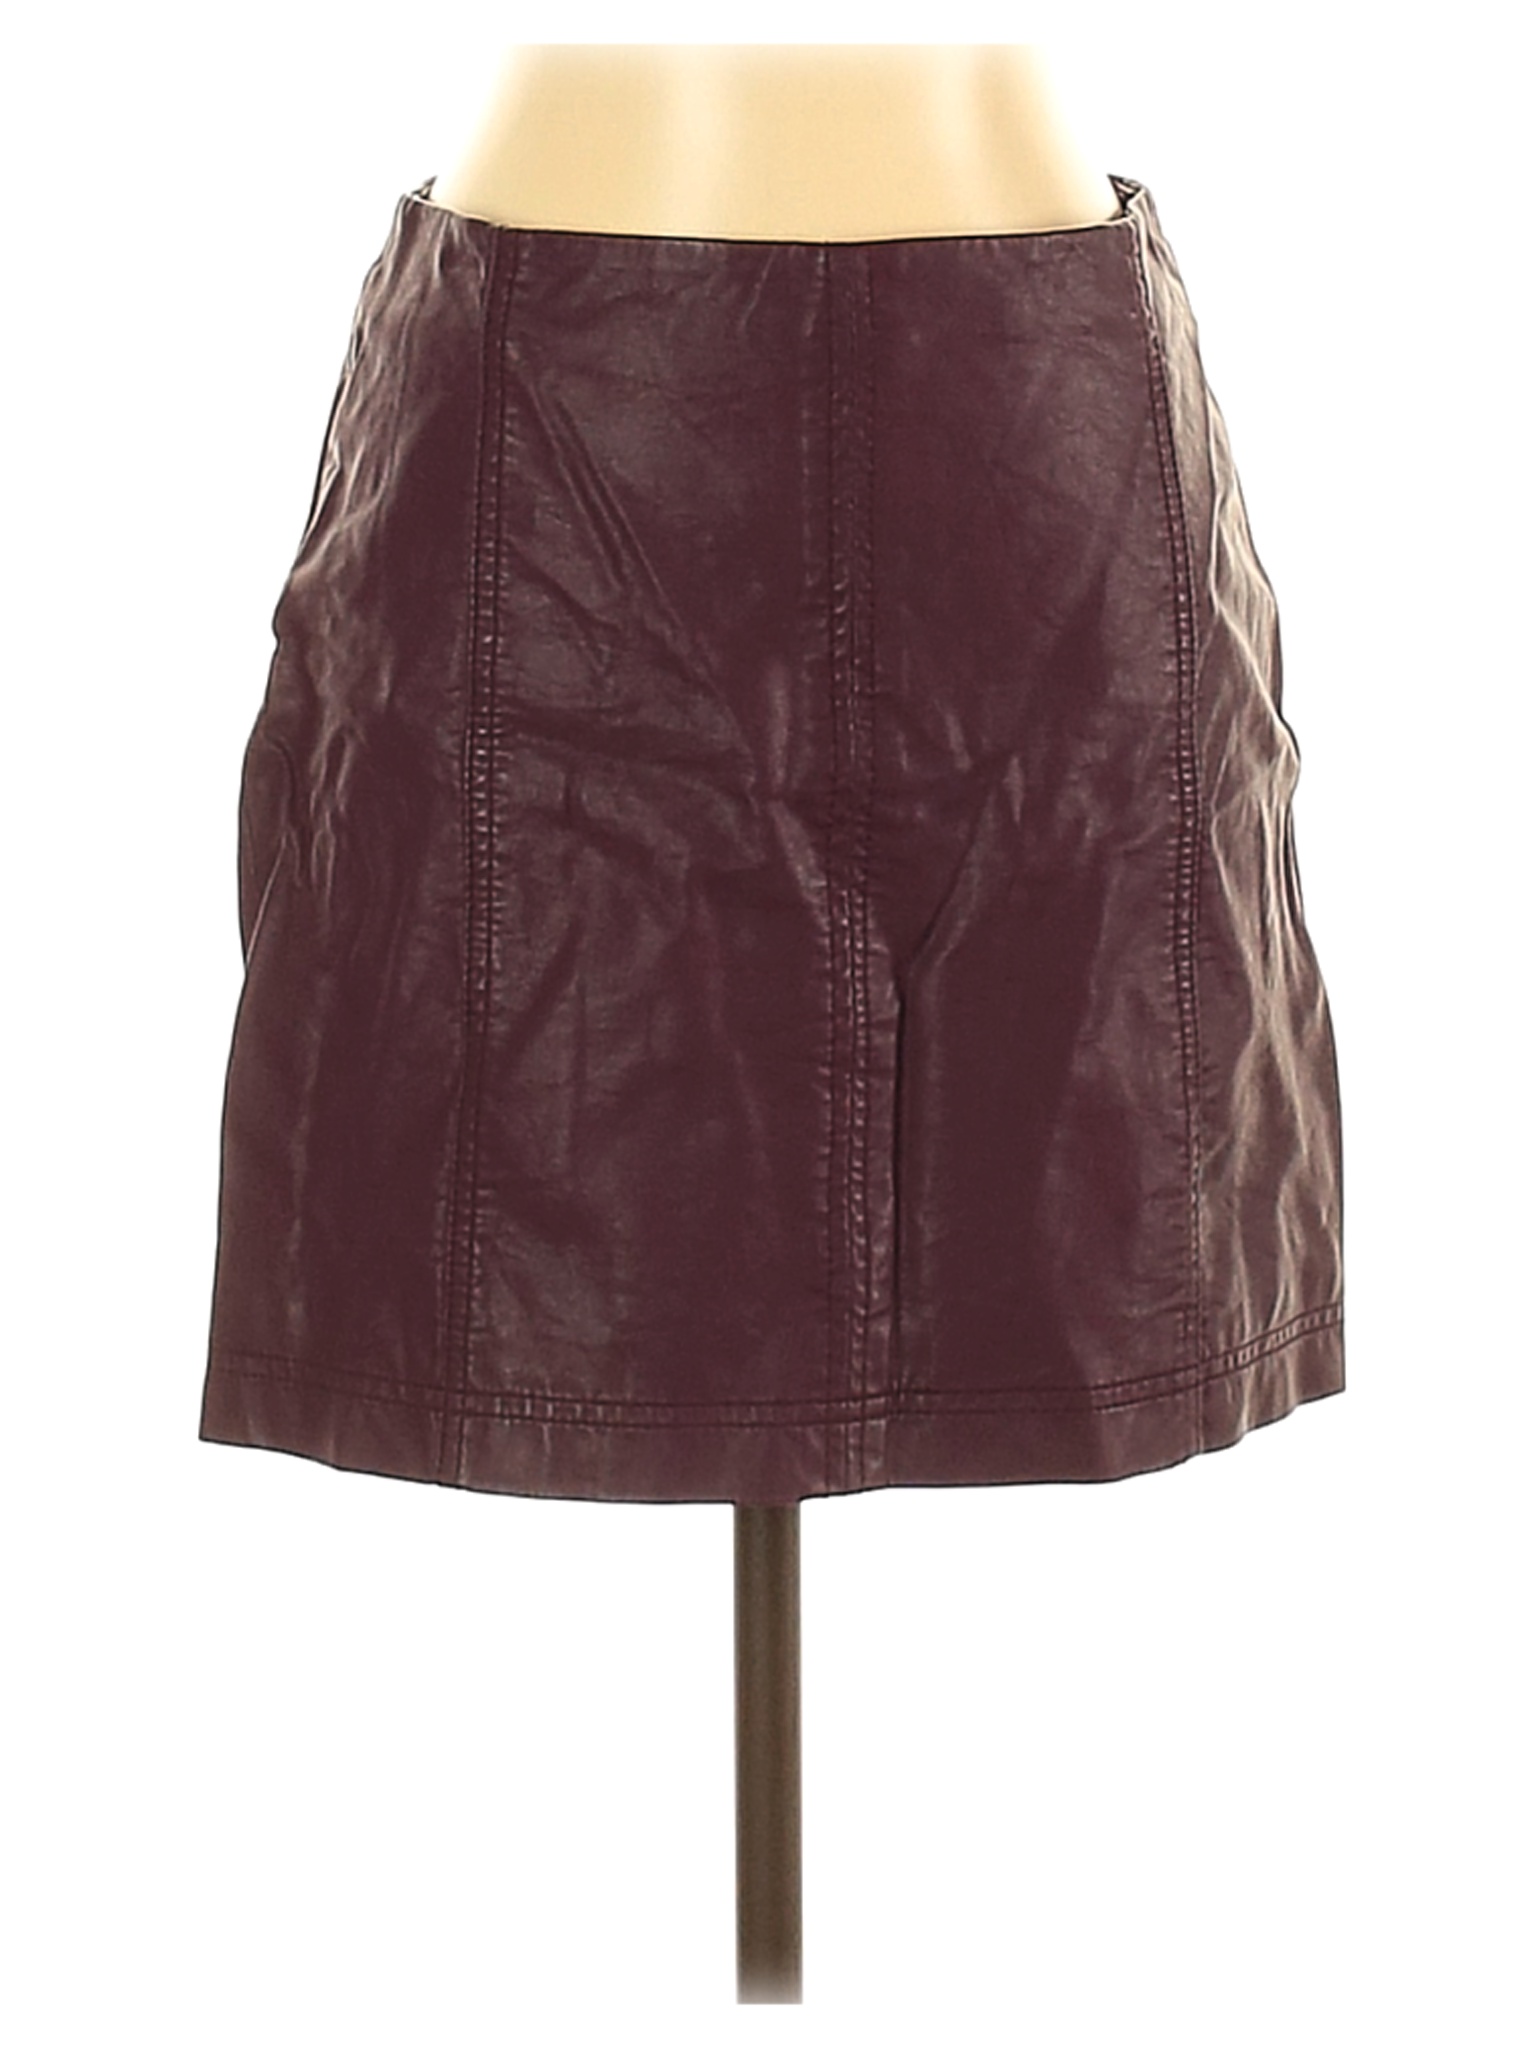 Free People Women Purple Faux Leather Skirt 4 | eBay